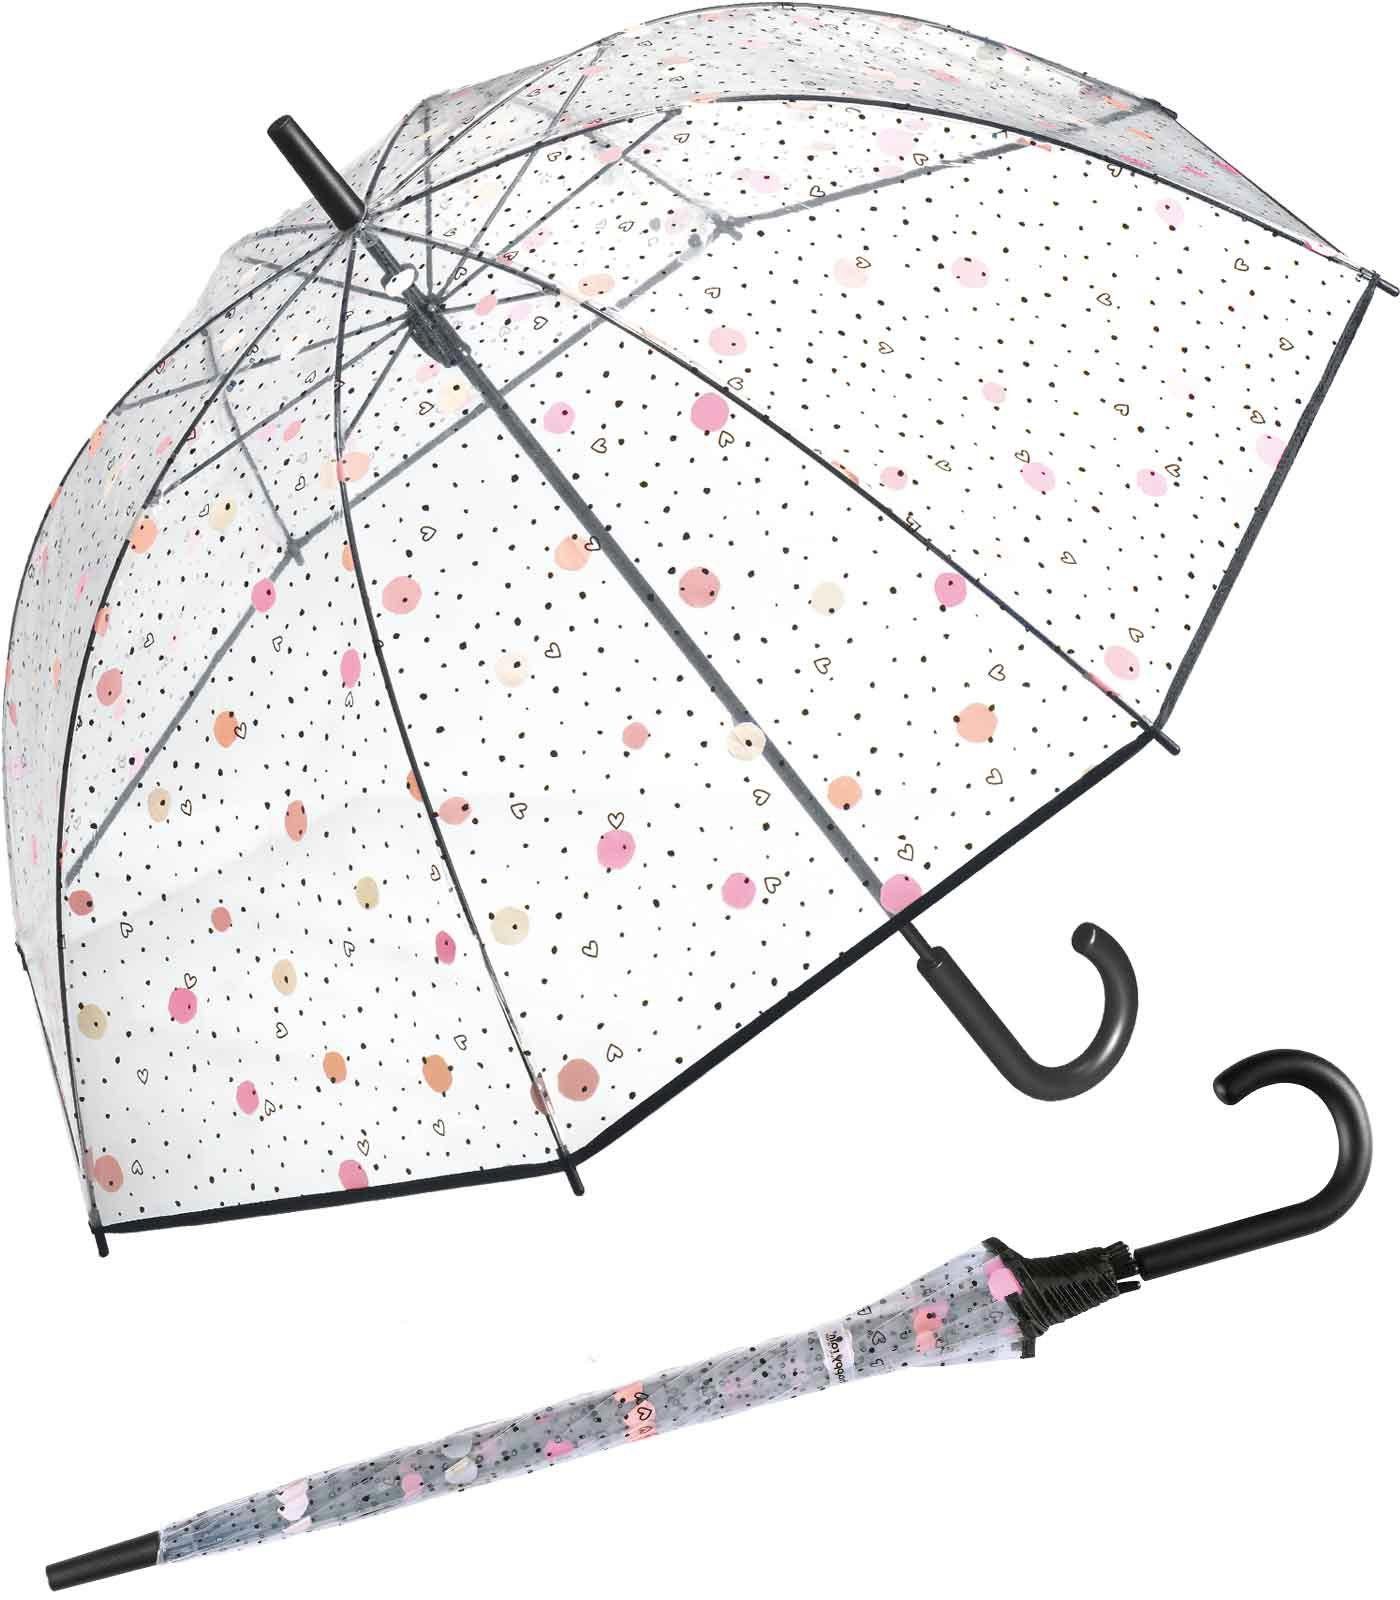 HAPPY RAIN Langregenschirm großer, transparenter Glockenschirm für Damen, bedruckt mit bunten Punkten und kleinen Herzen